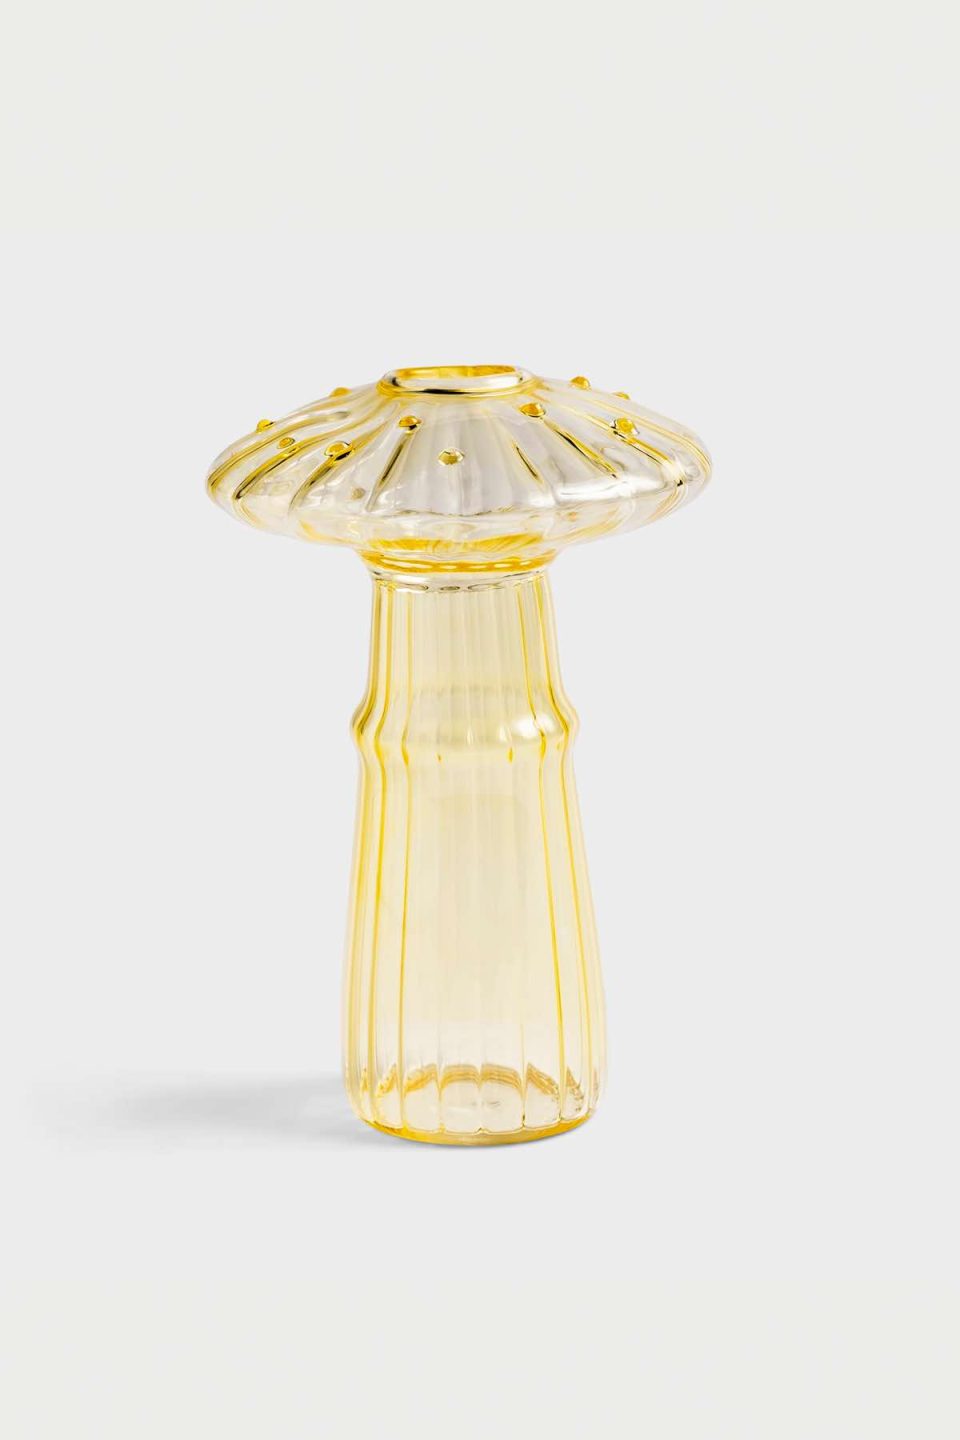 Na slici je staklena vaza u obliku gljive žute boje. Vaza ima rupicu za cvjetiće na vrhu klobuka, stoji na sivoj pozadini